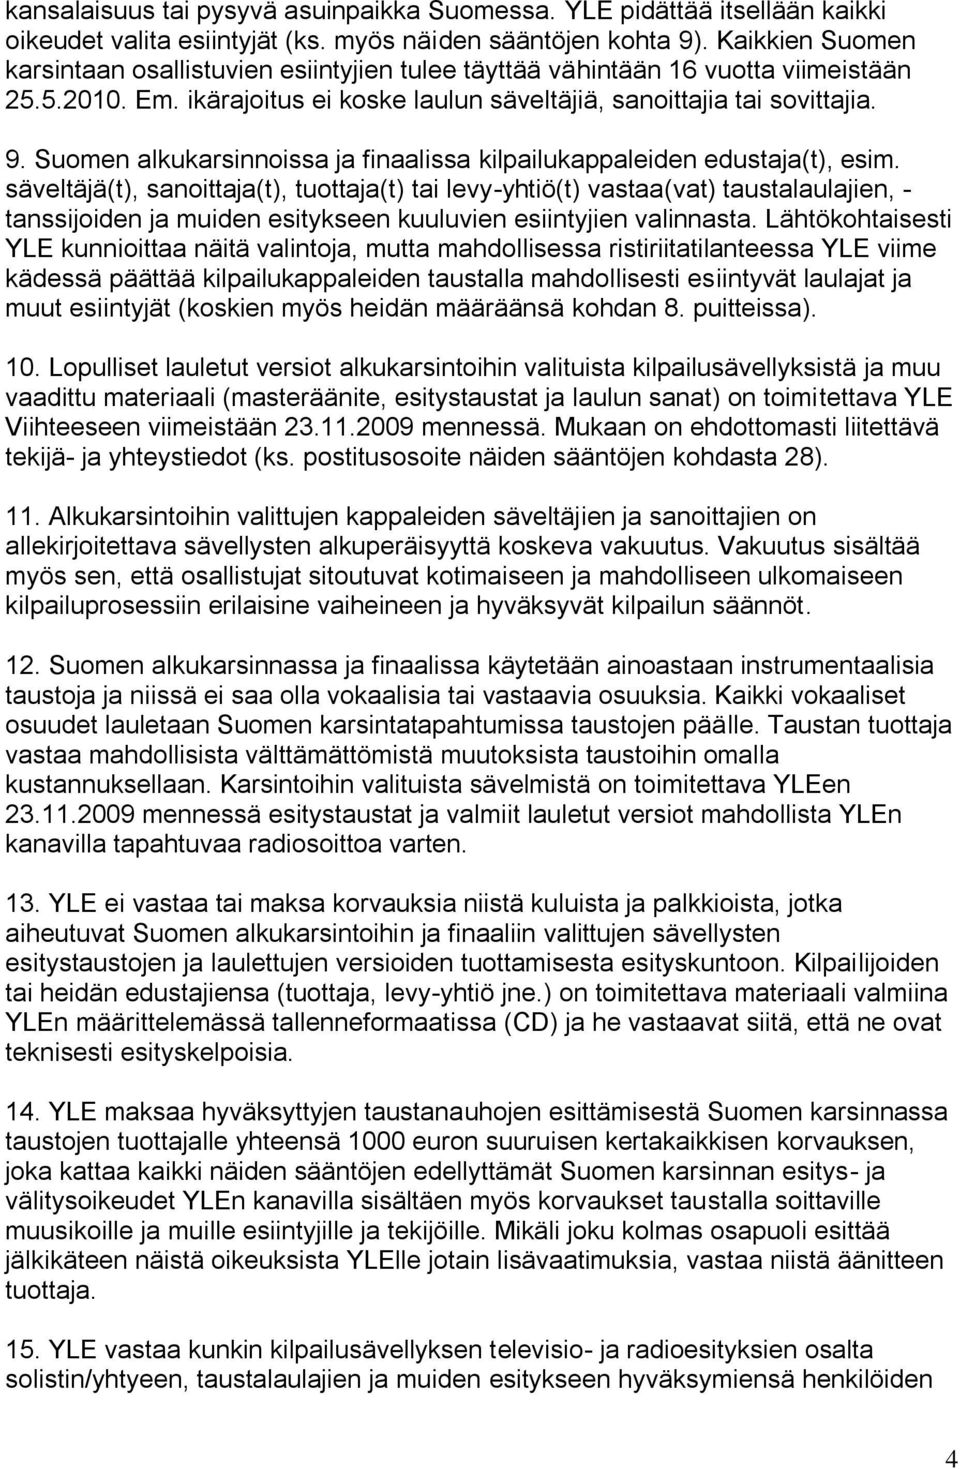 Suomen alkukarsinnoissa ja finaalissa kilpailukappaleiden edustaja(t), esim.